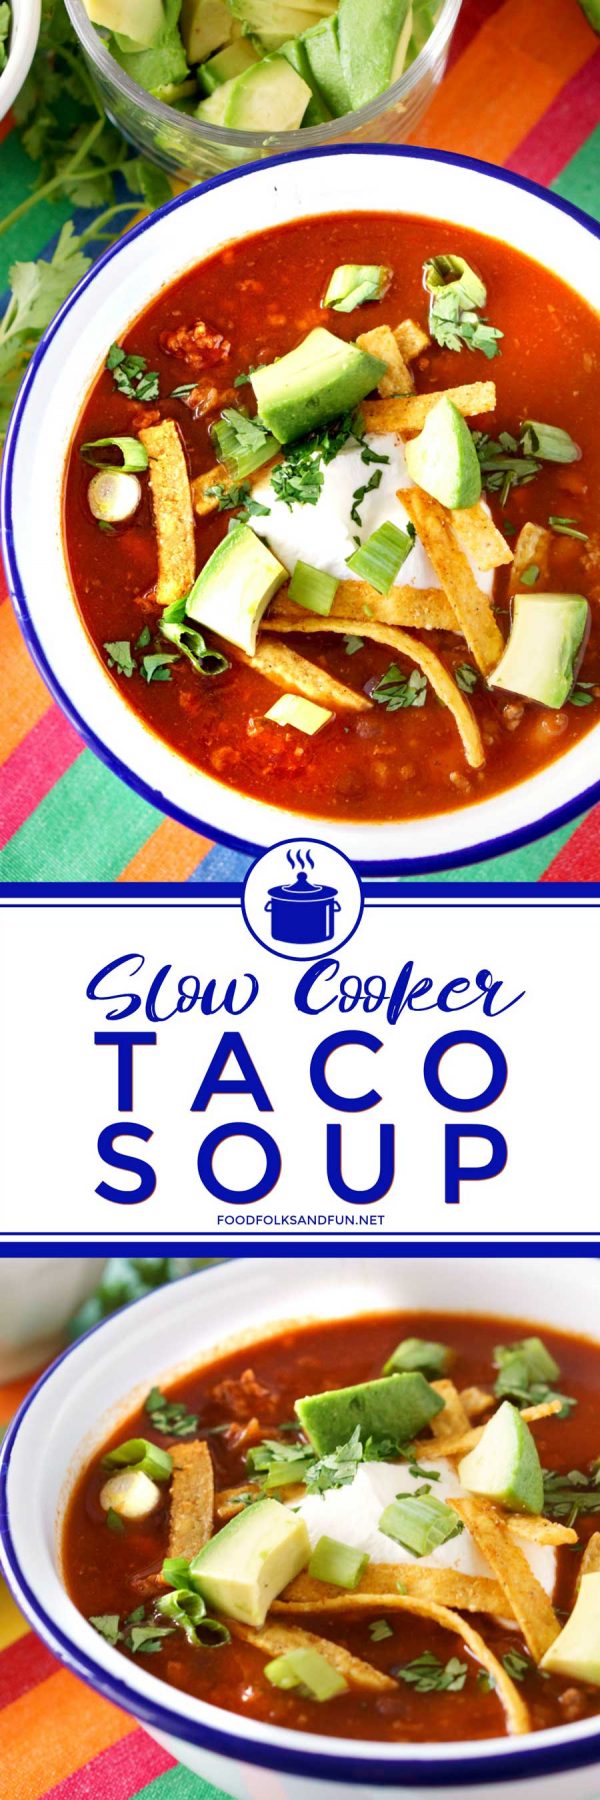 Crockpot Taco Soup